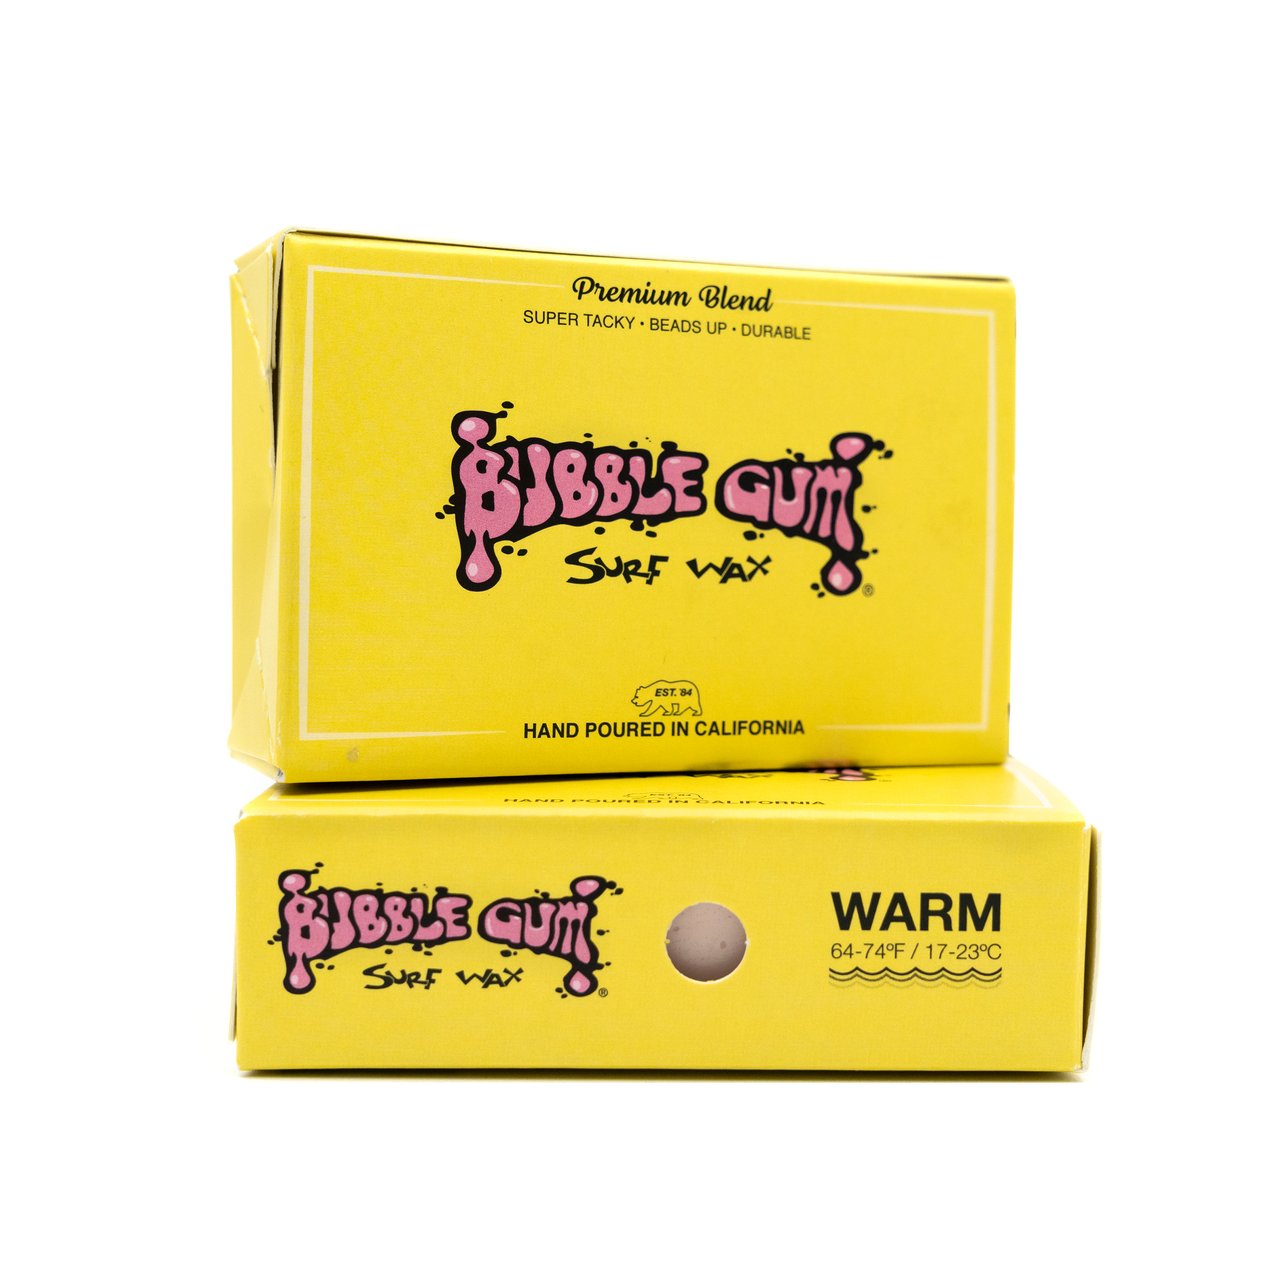 Bubble Gum Surf Wax Premium Blend - Warm